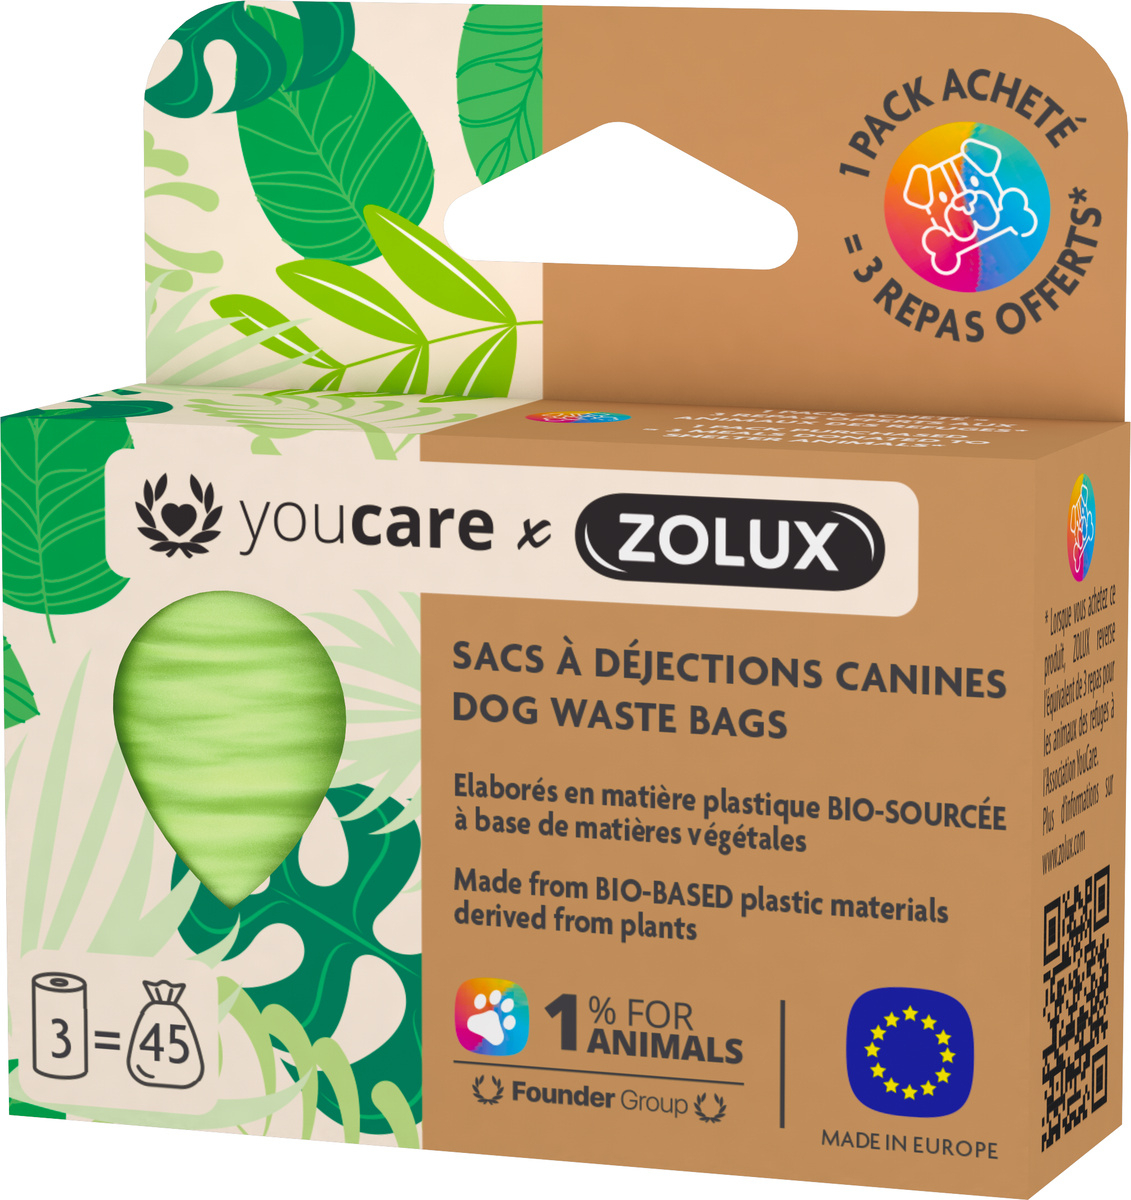 Sacchetti per cacca biodegradabili Zolux Youcare